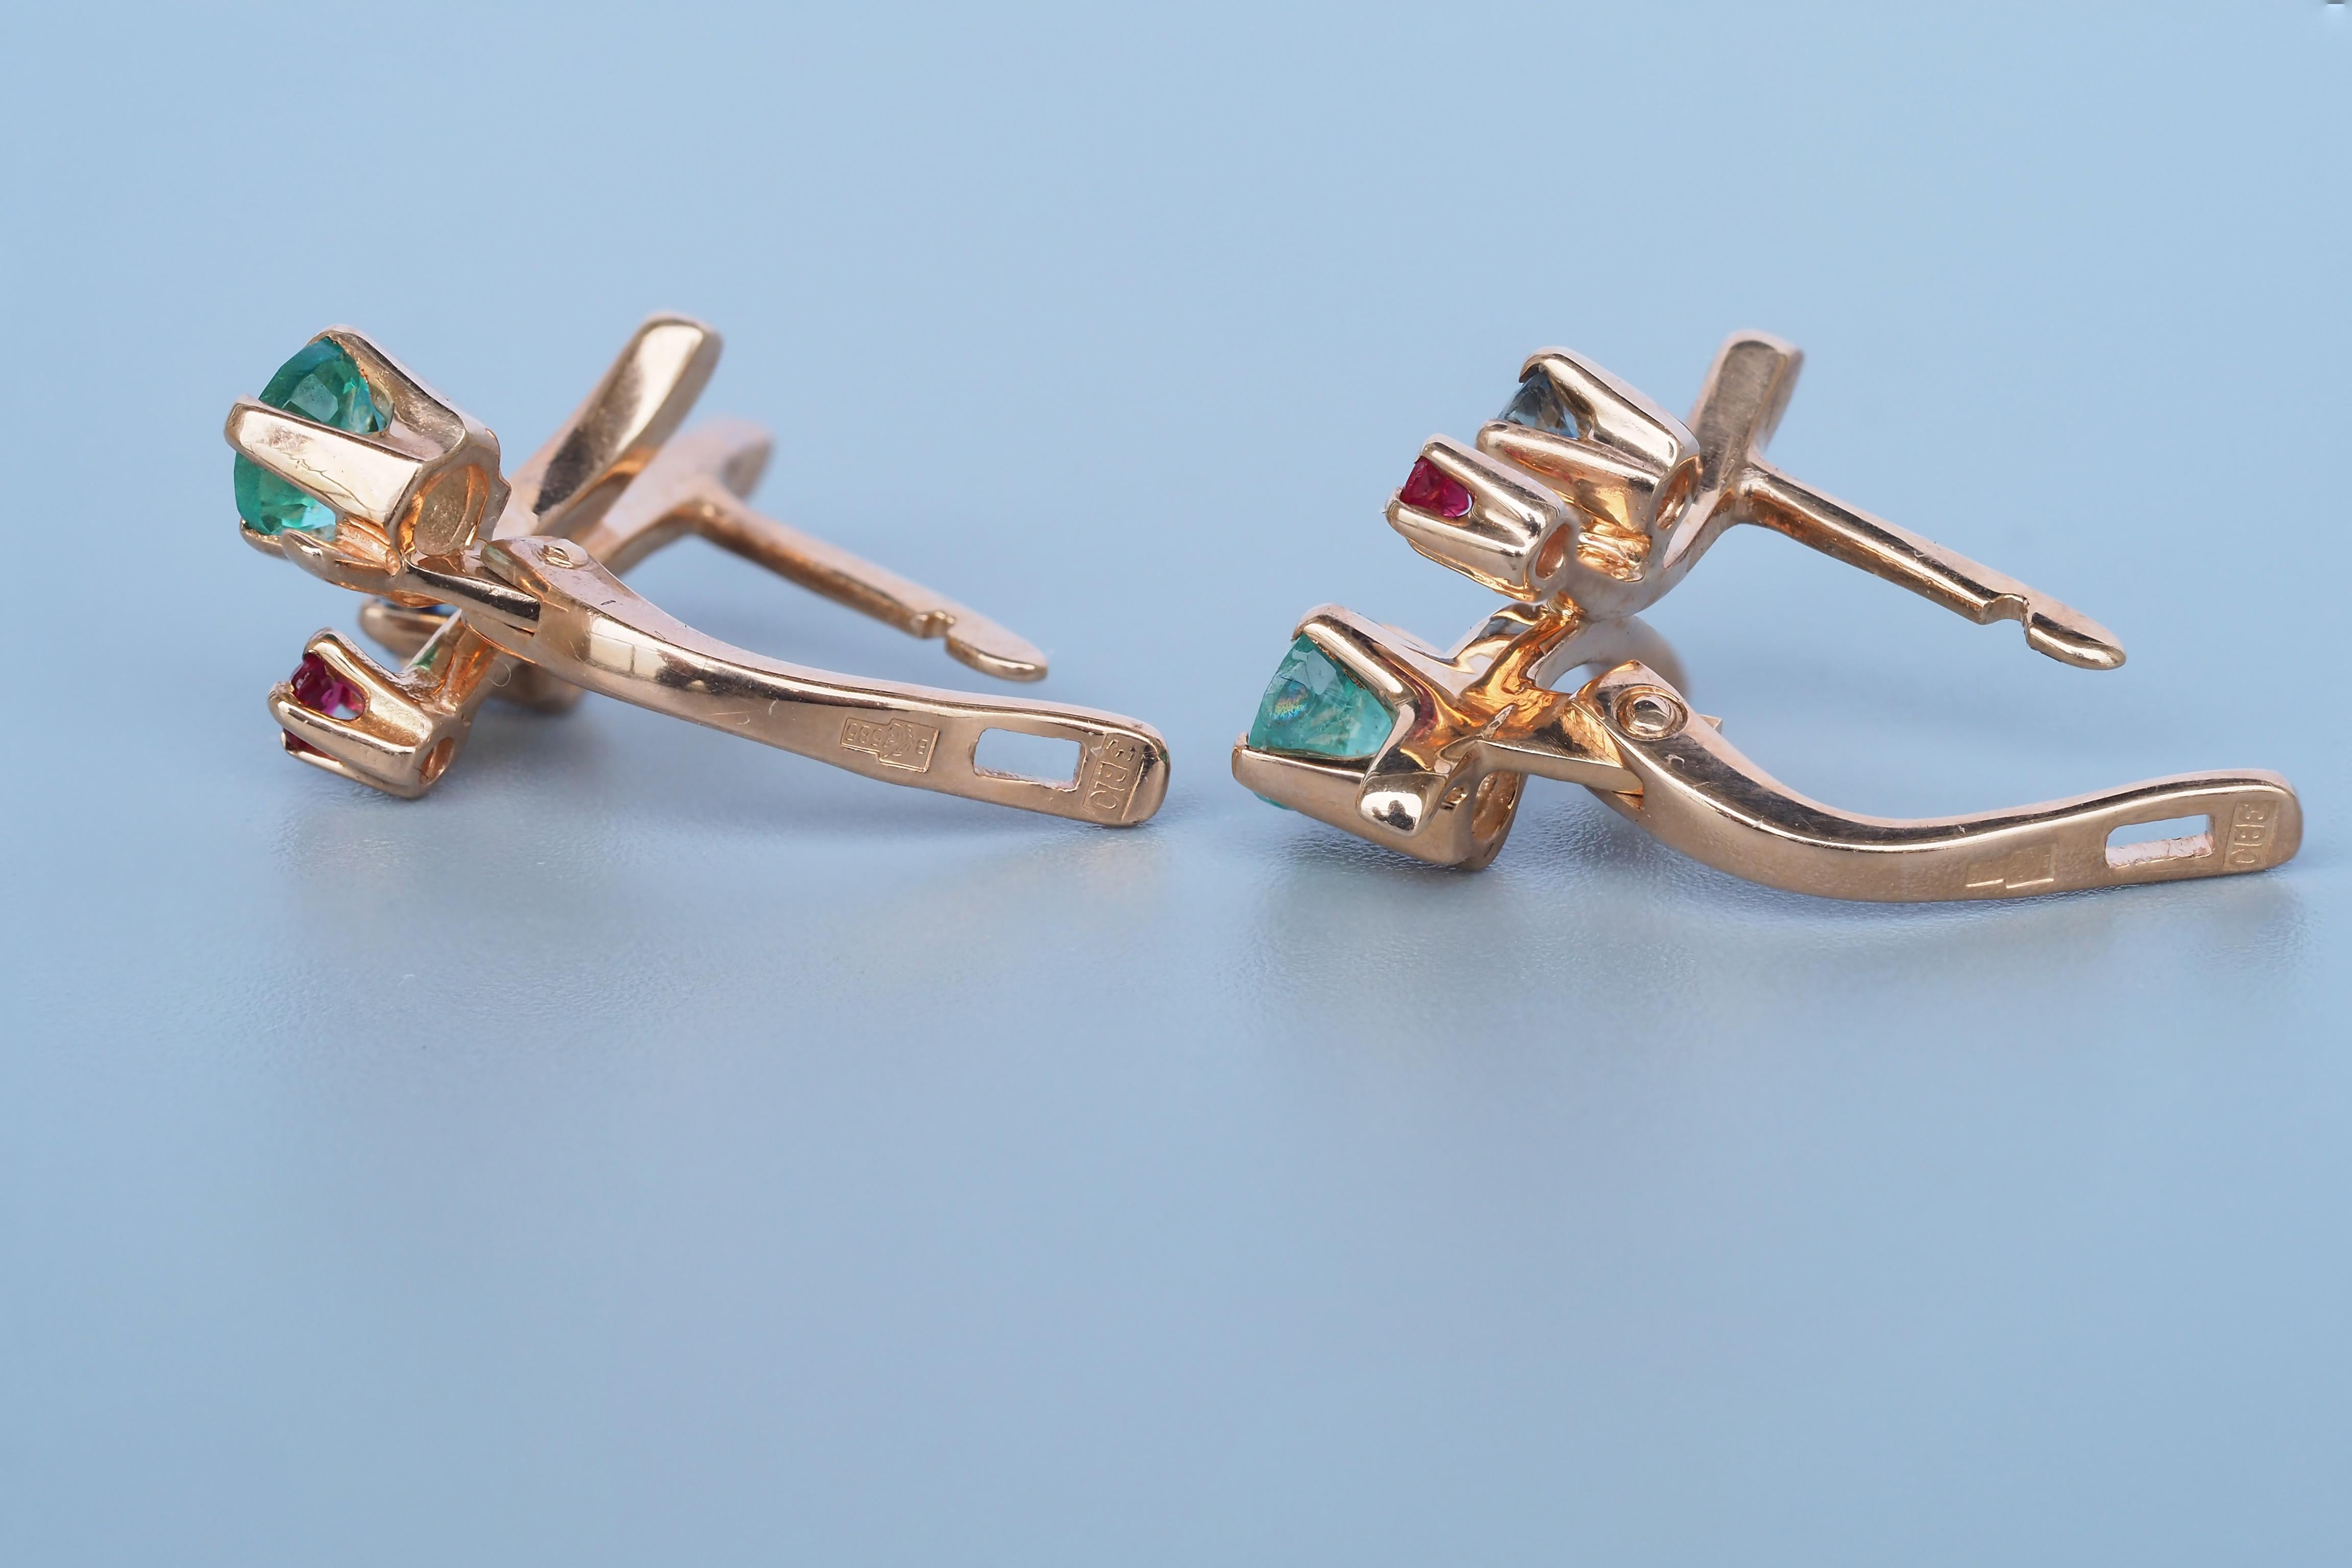 sapphire earrings for little girl